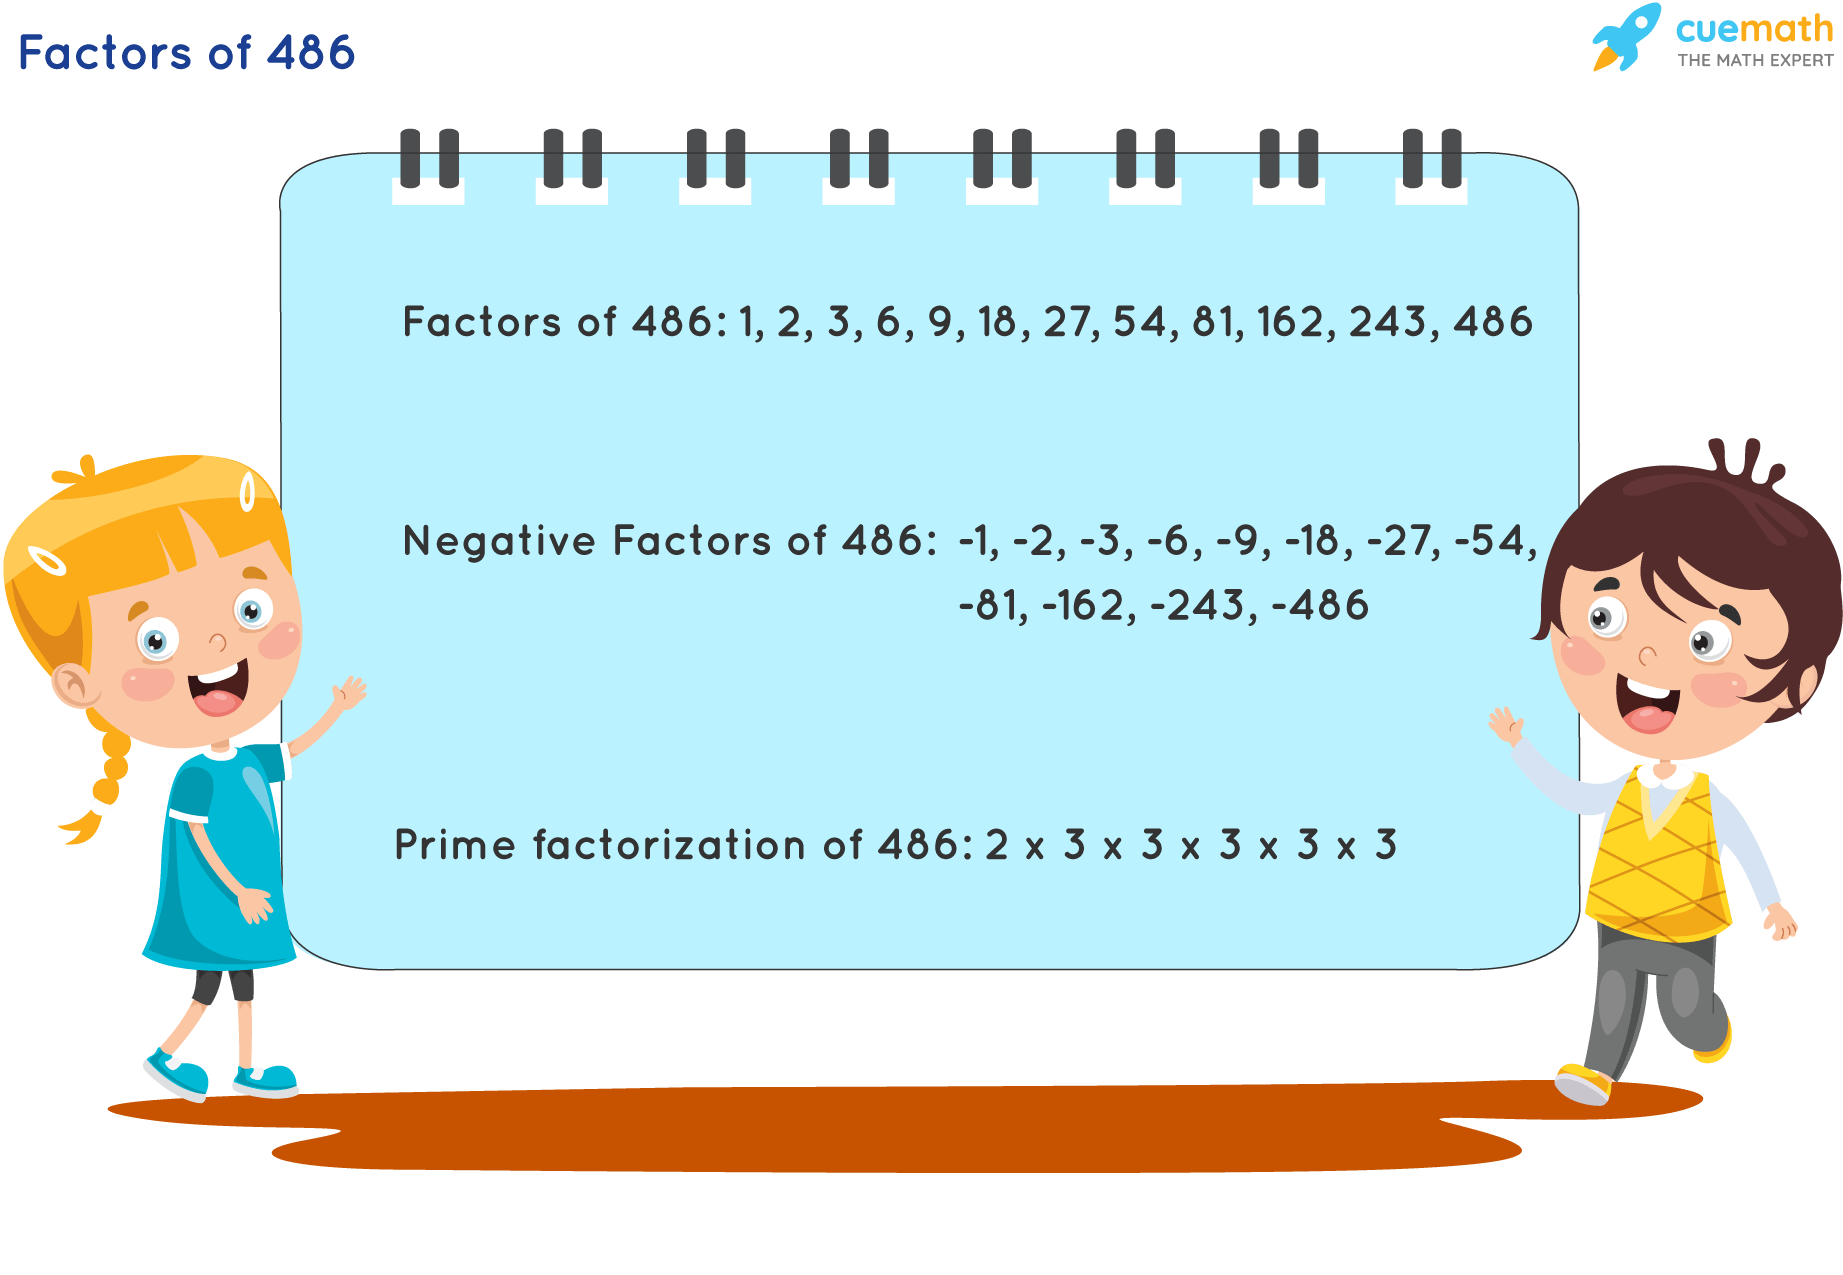 Factors of 486